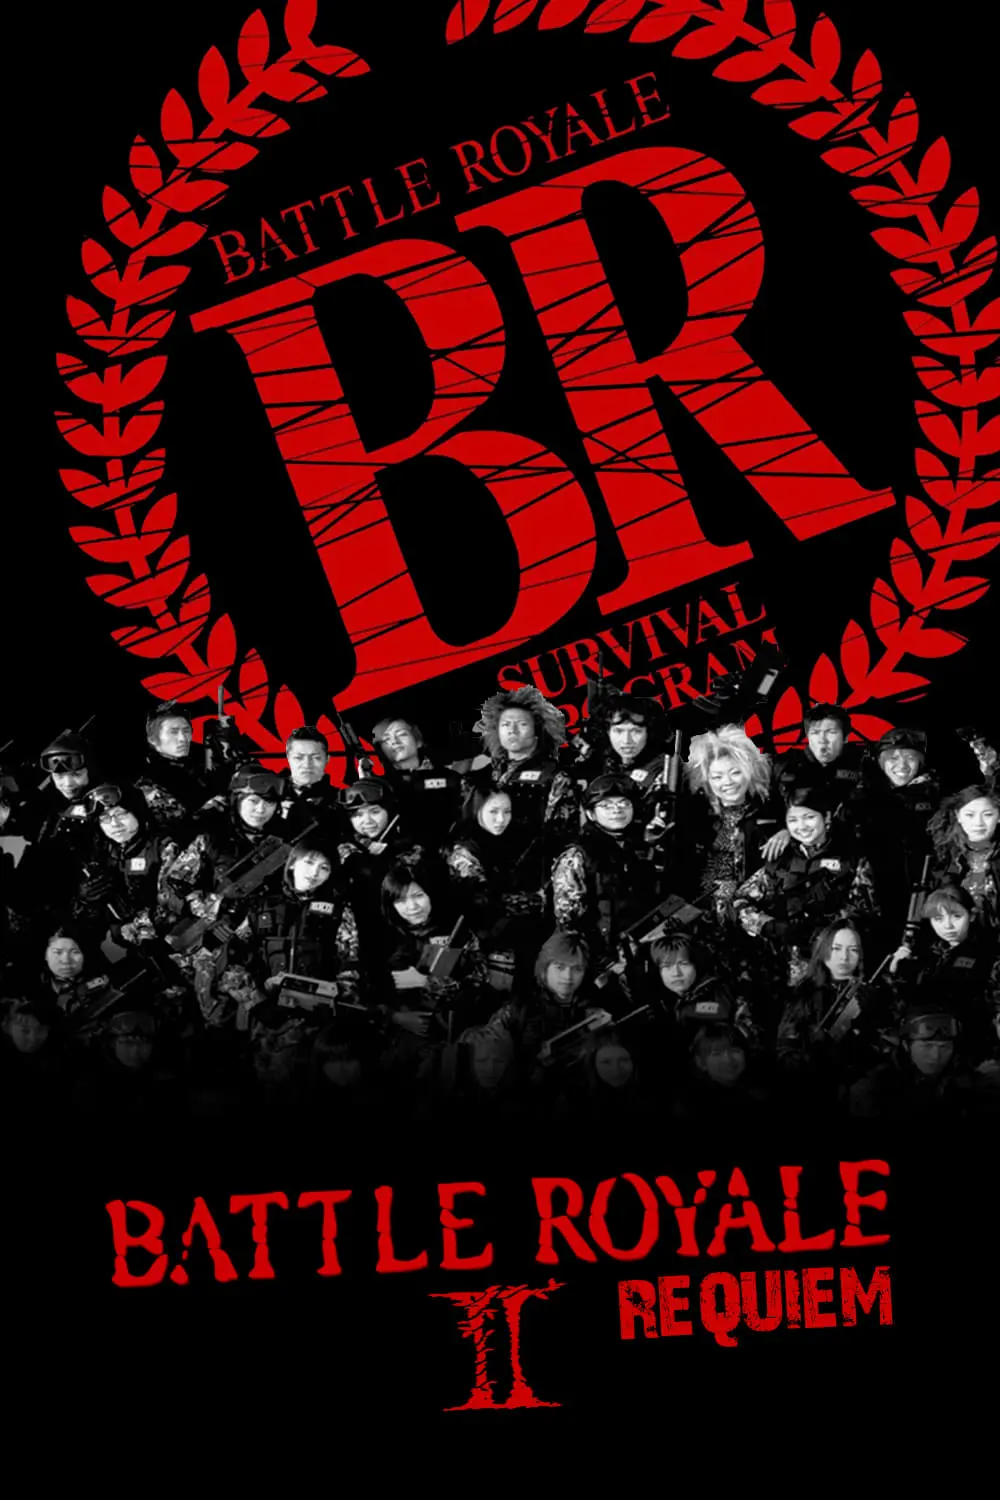 Battle Royale II_peliplat